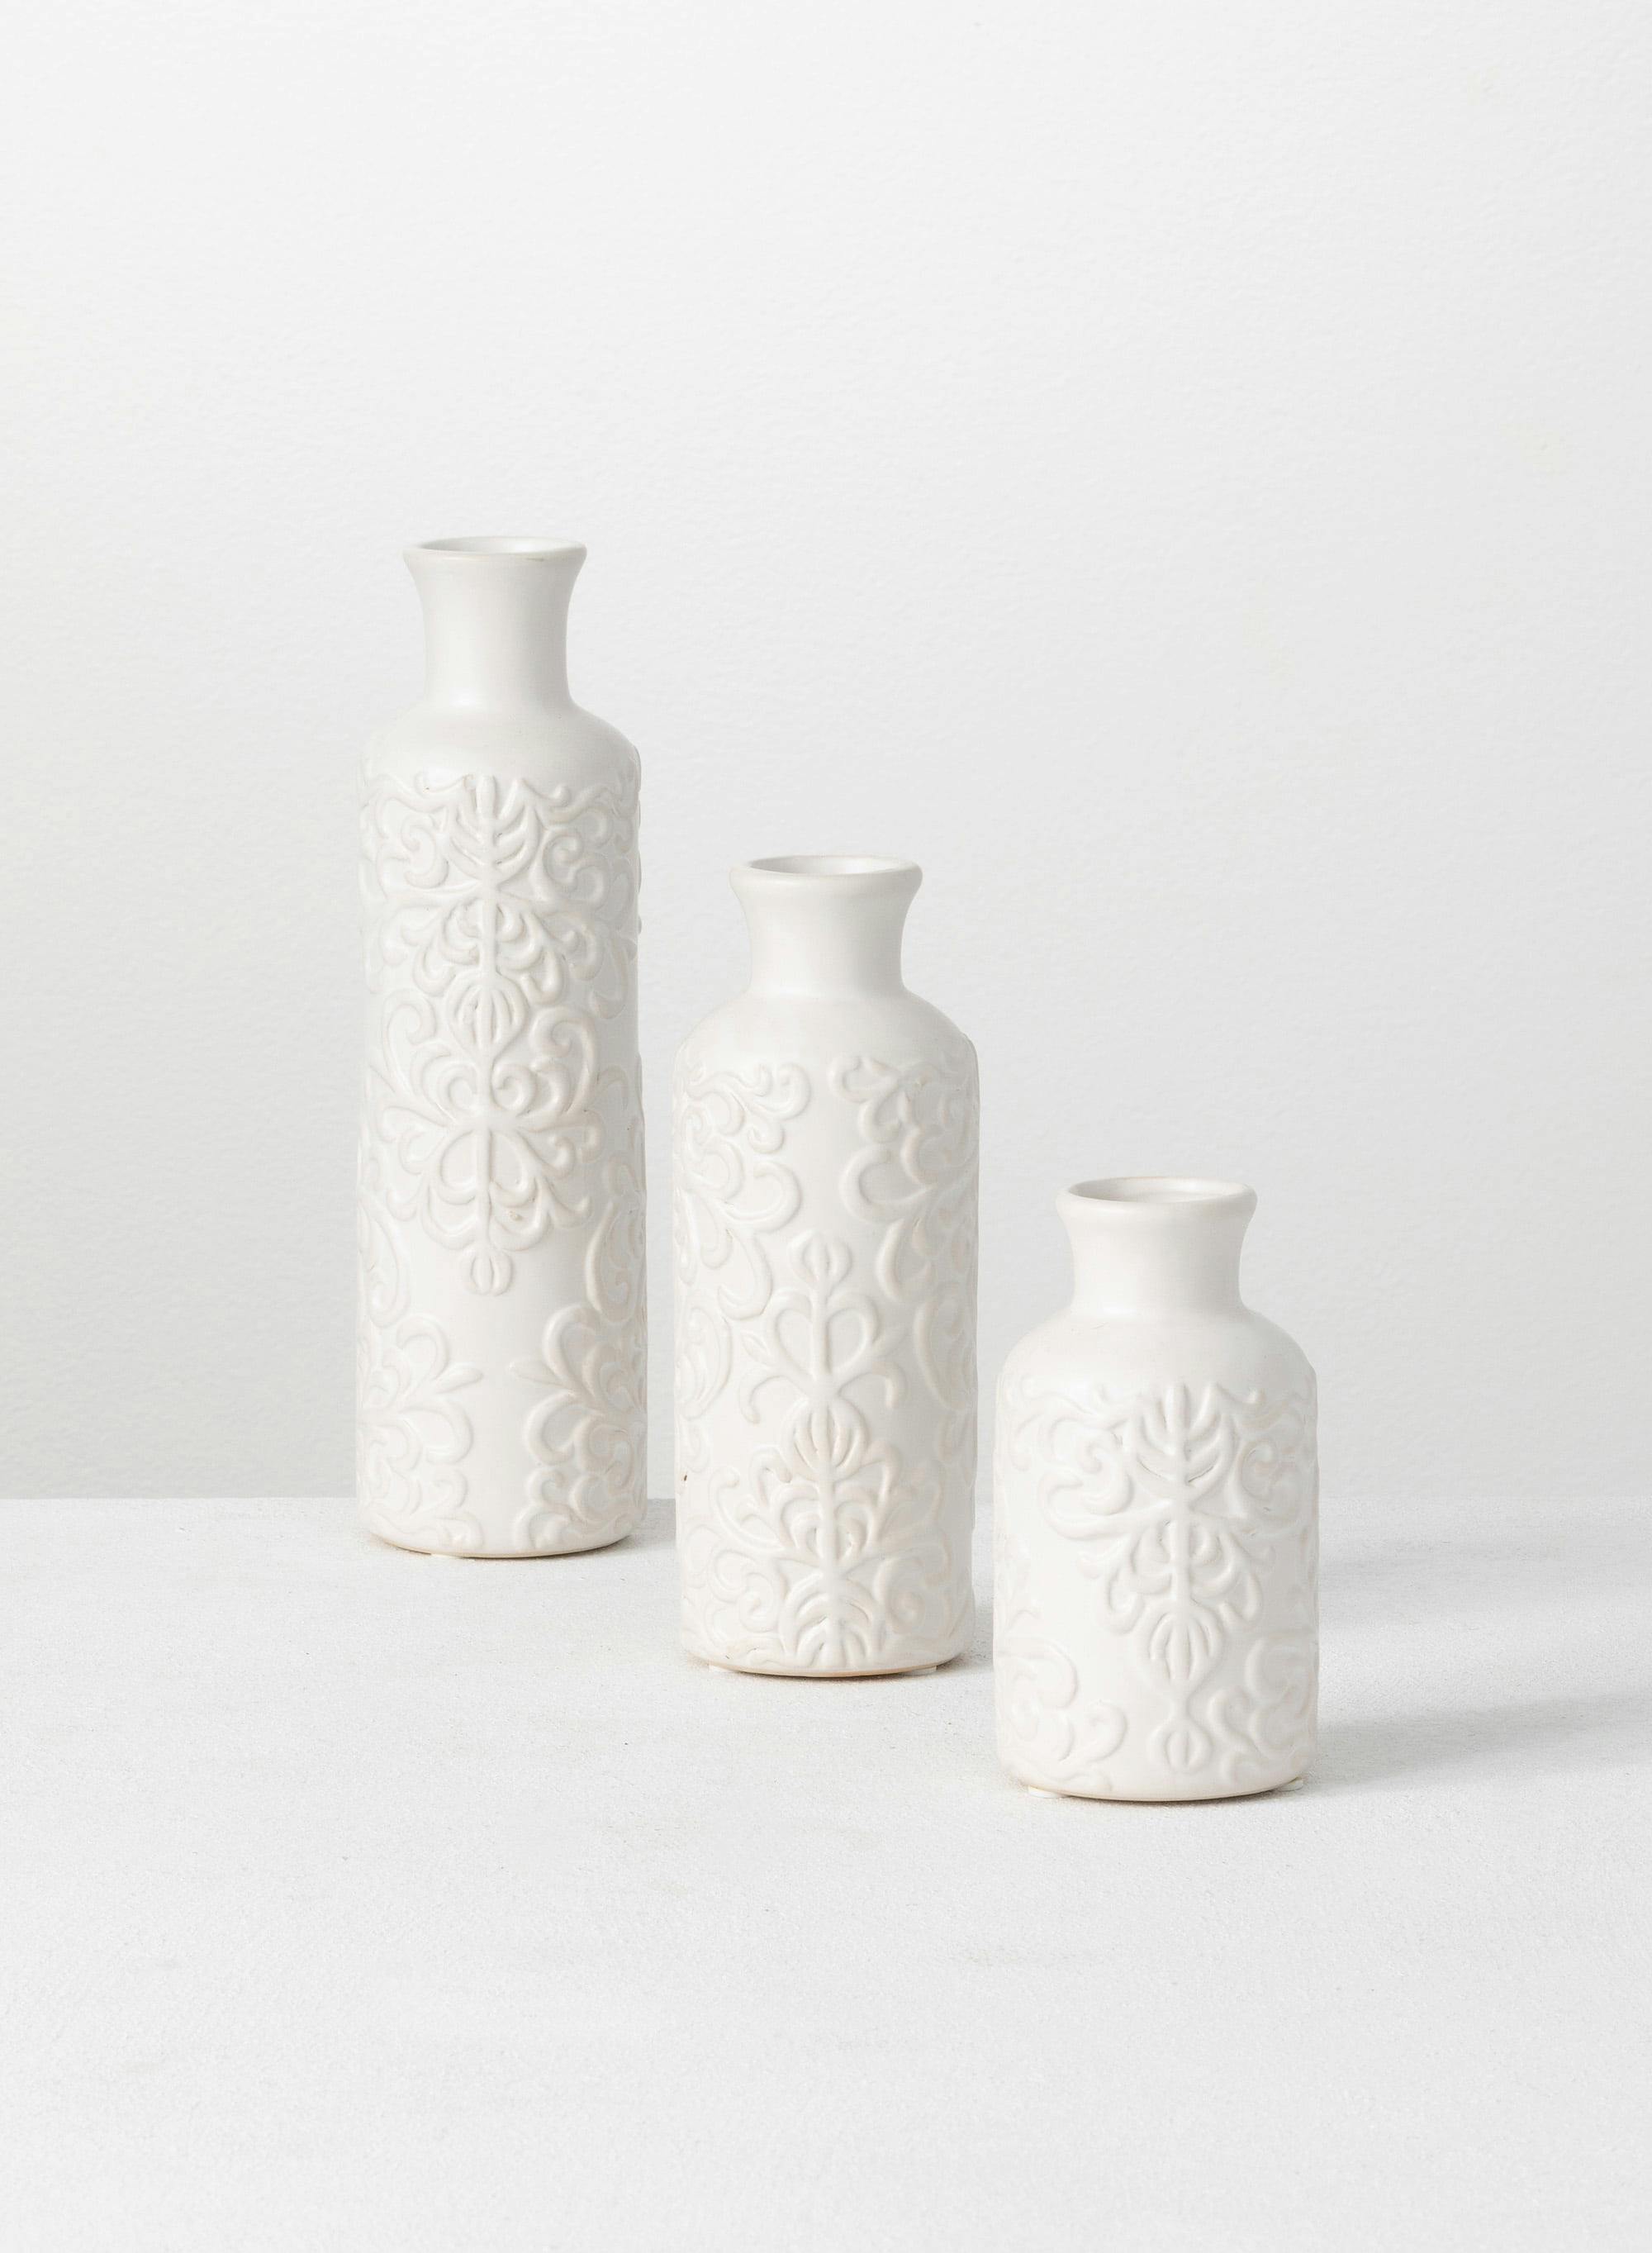 Elegant Trio Ceramic Bud Vases 10", 7.5", & 5.5" - White